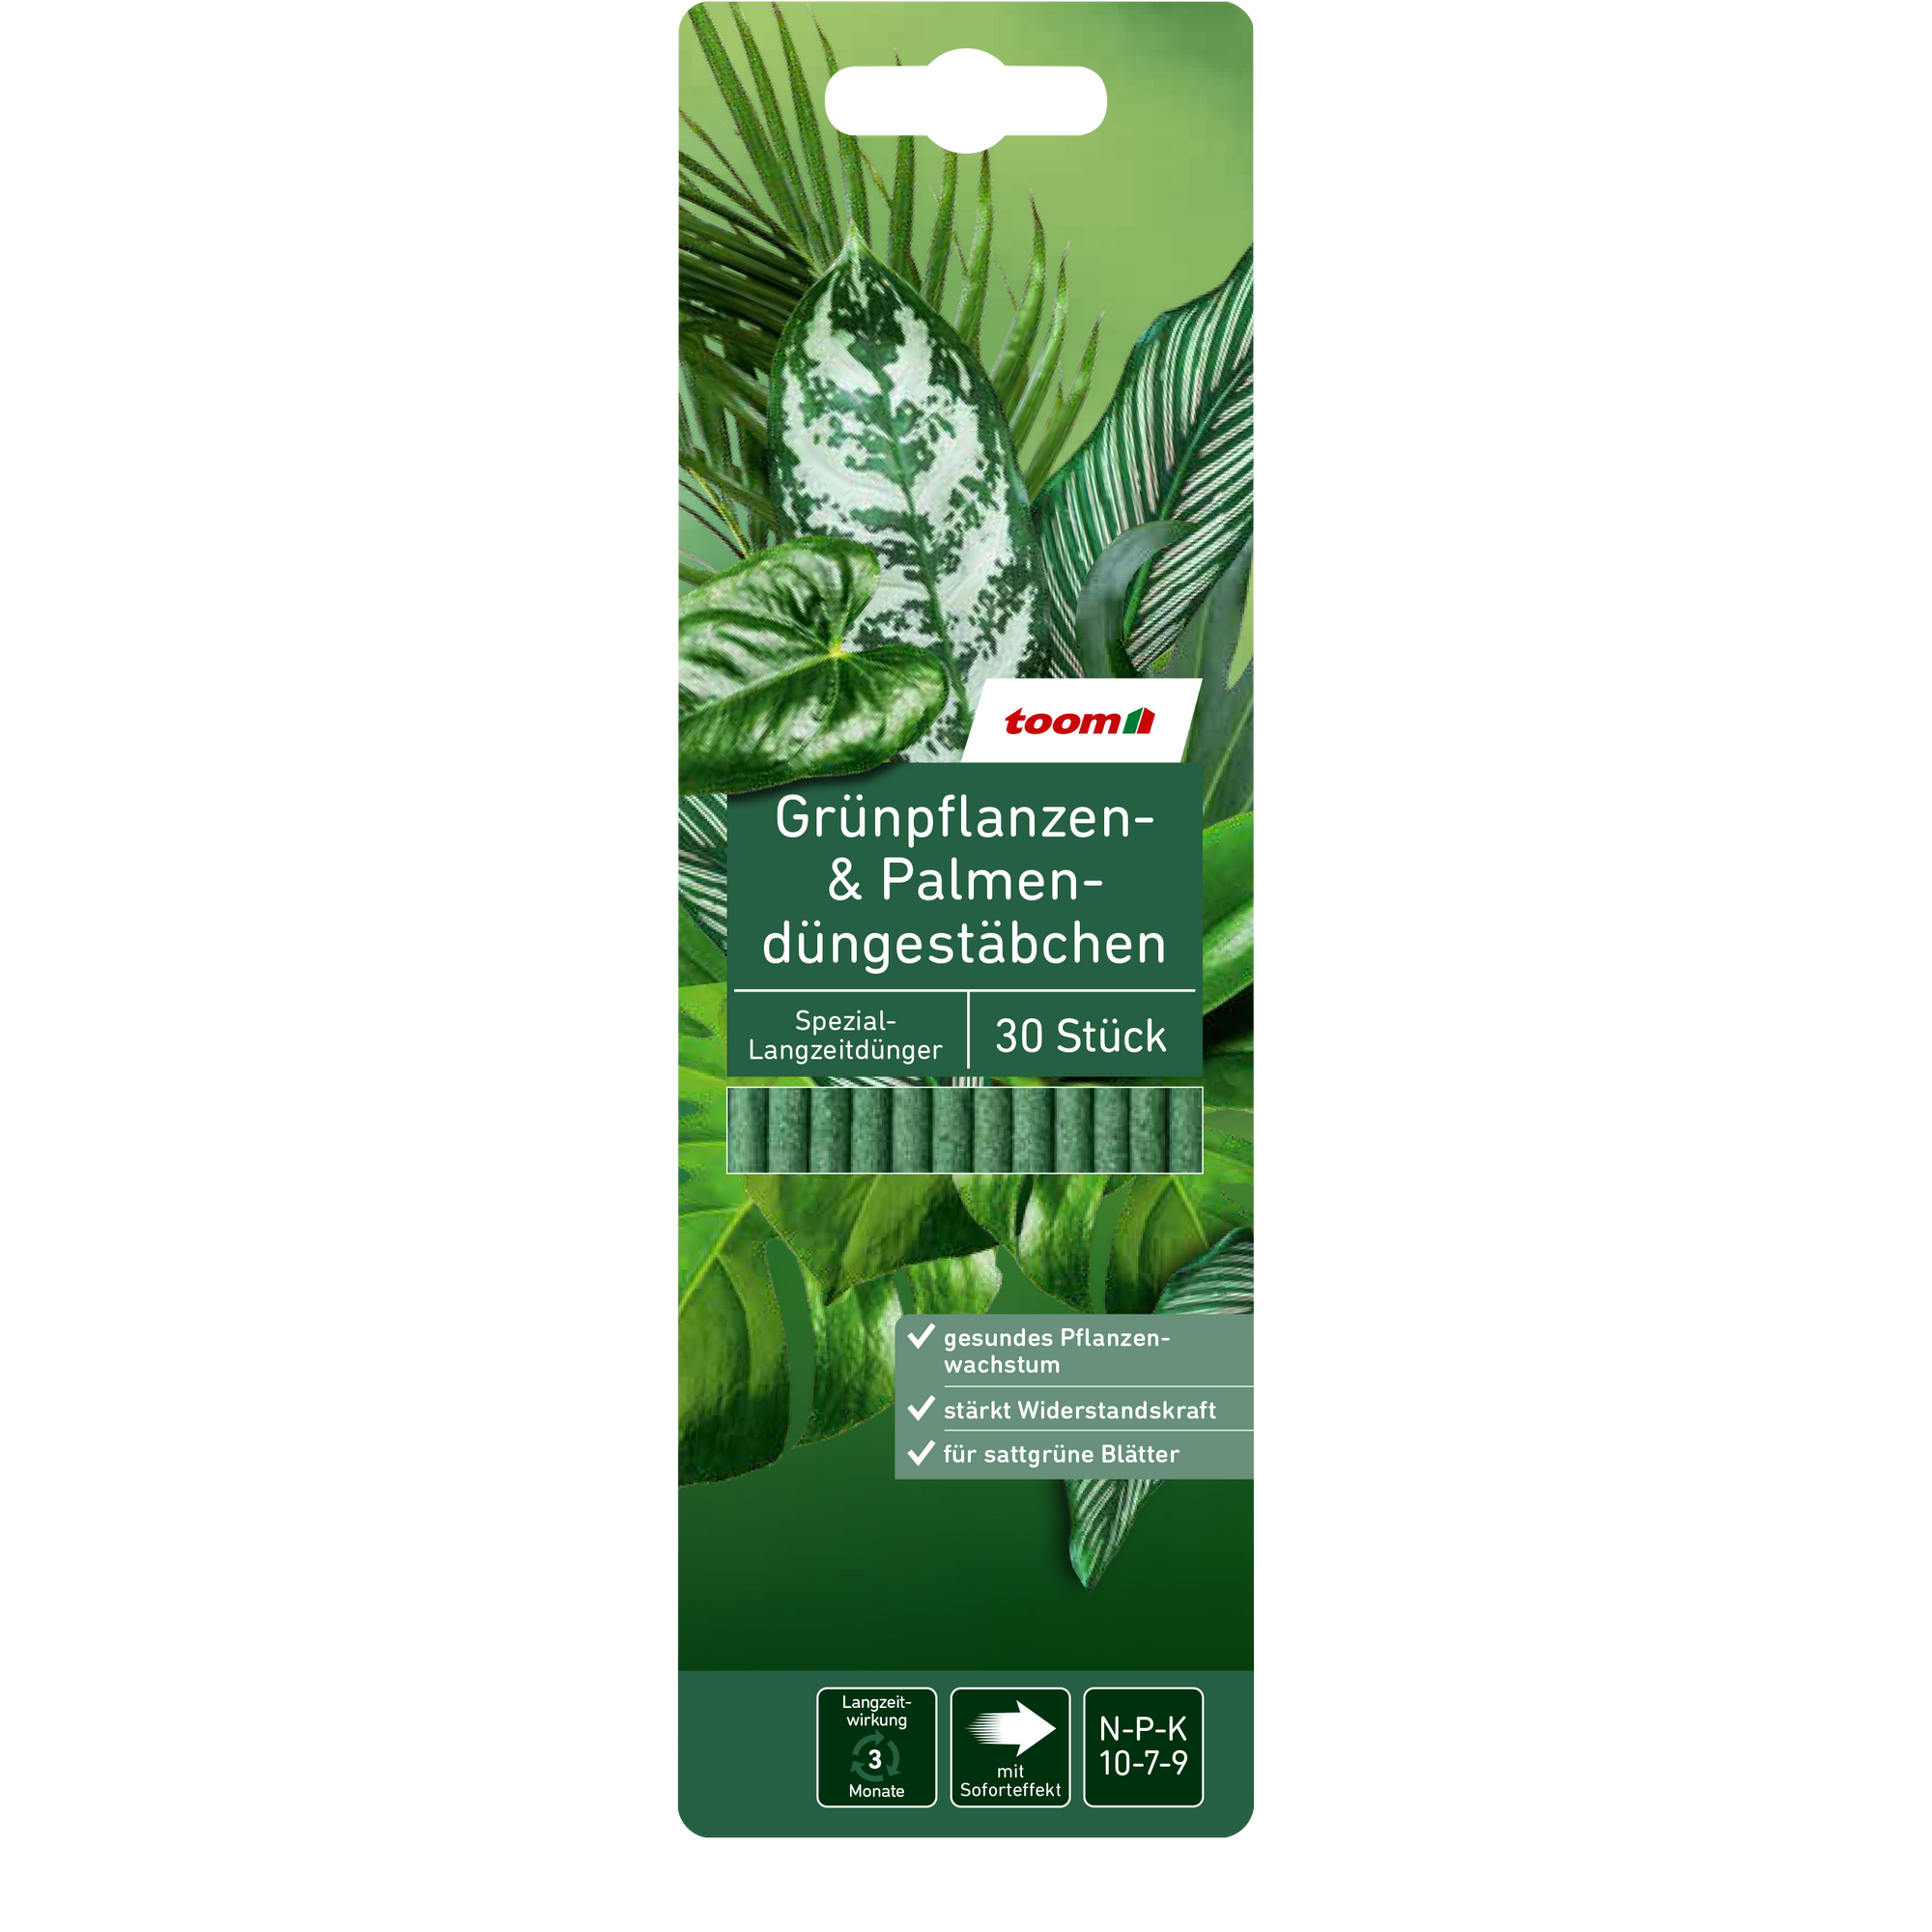 Grünpflanzen- und Palmendüngestäbchen 30 Stück + product picture